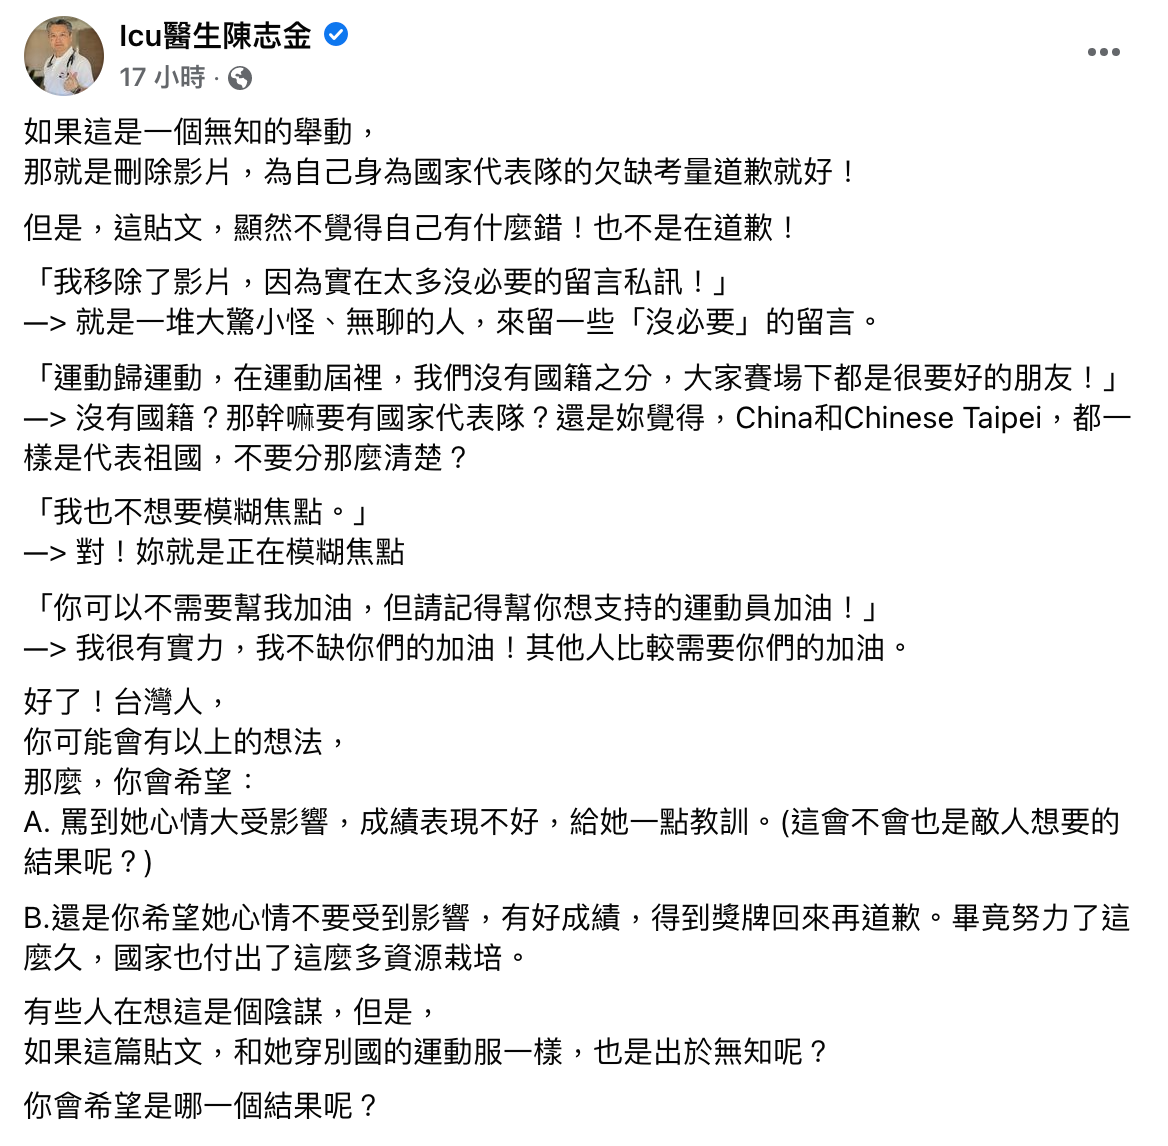 陳志金發文評論黃郁婷穿中國隊服事件。（翻攝自陳志金臉書）